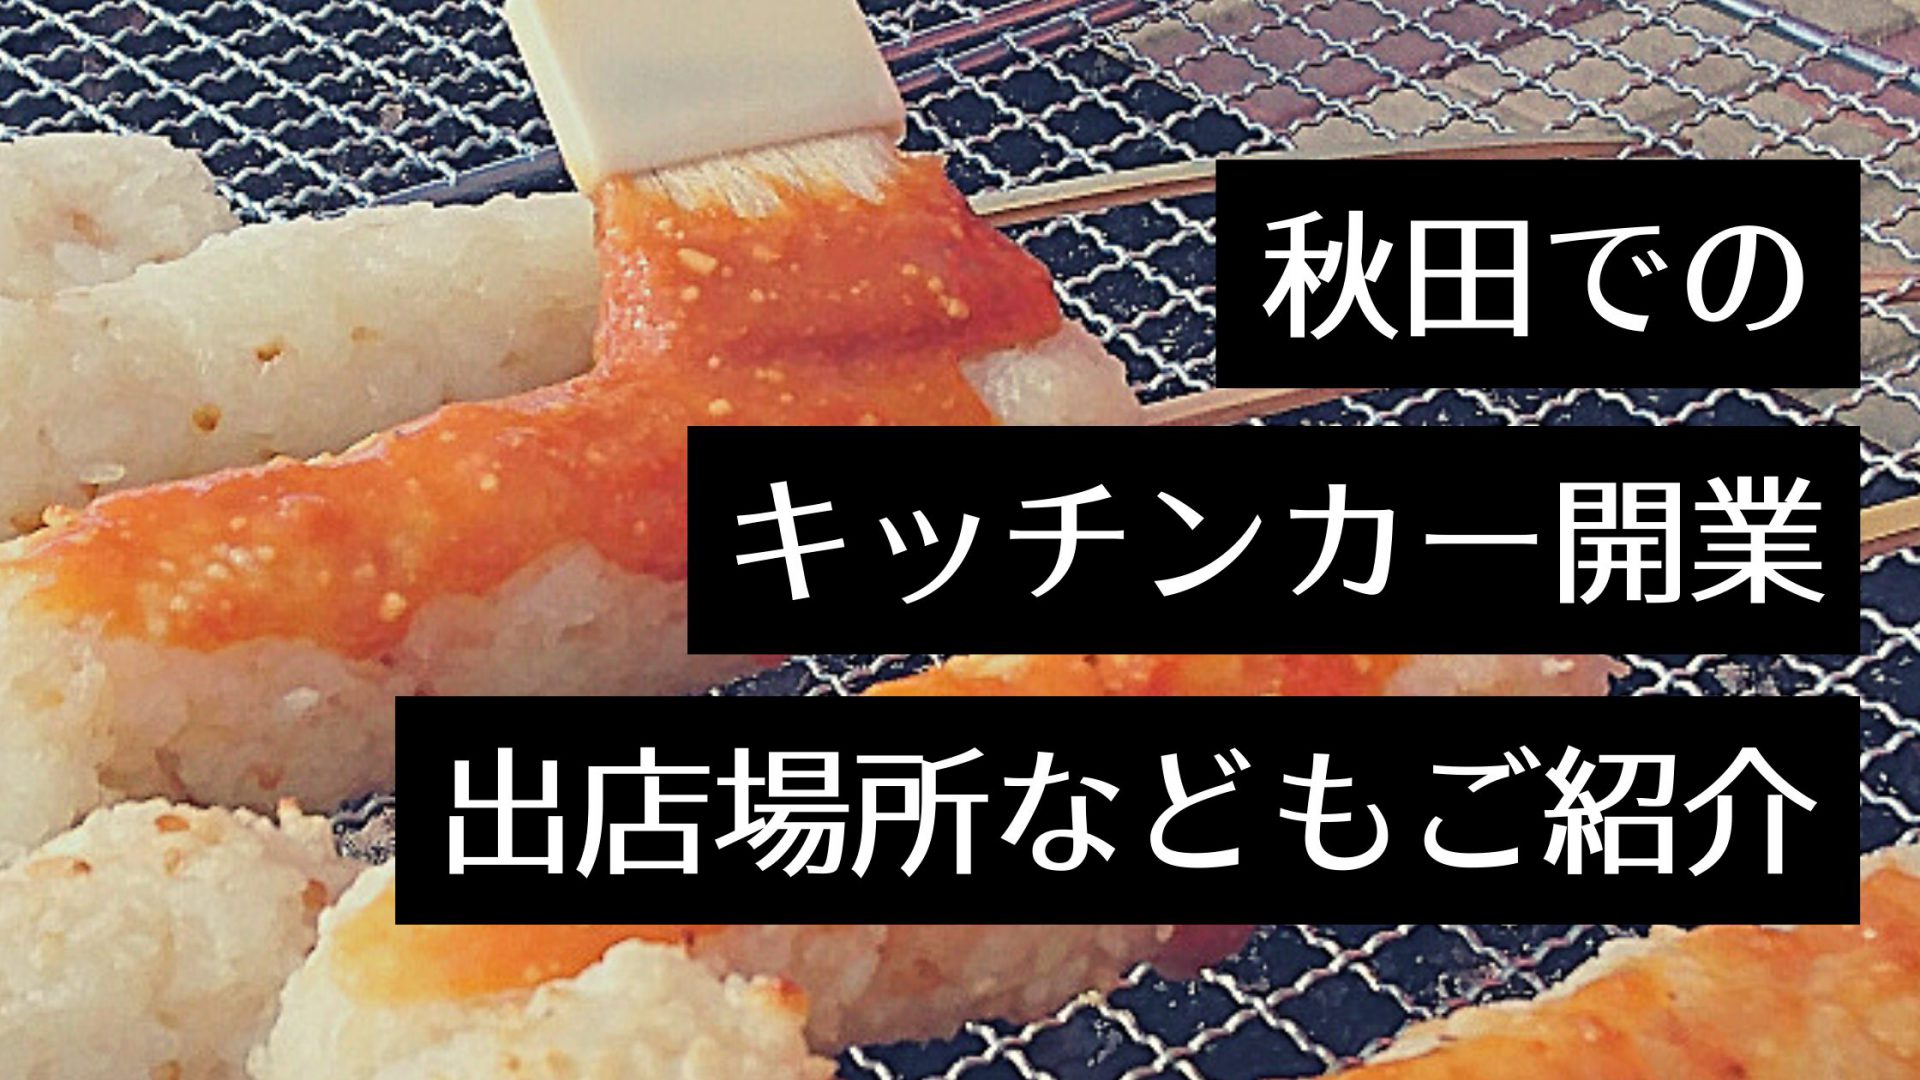 【秋田でキッチンカーを開業したい】開業する手順やイベント情報、出店場所まとめ